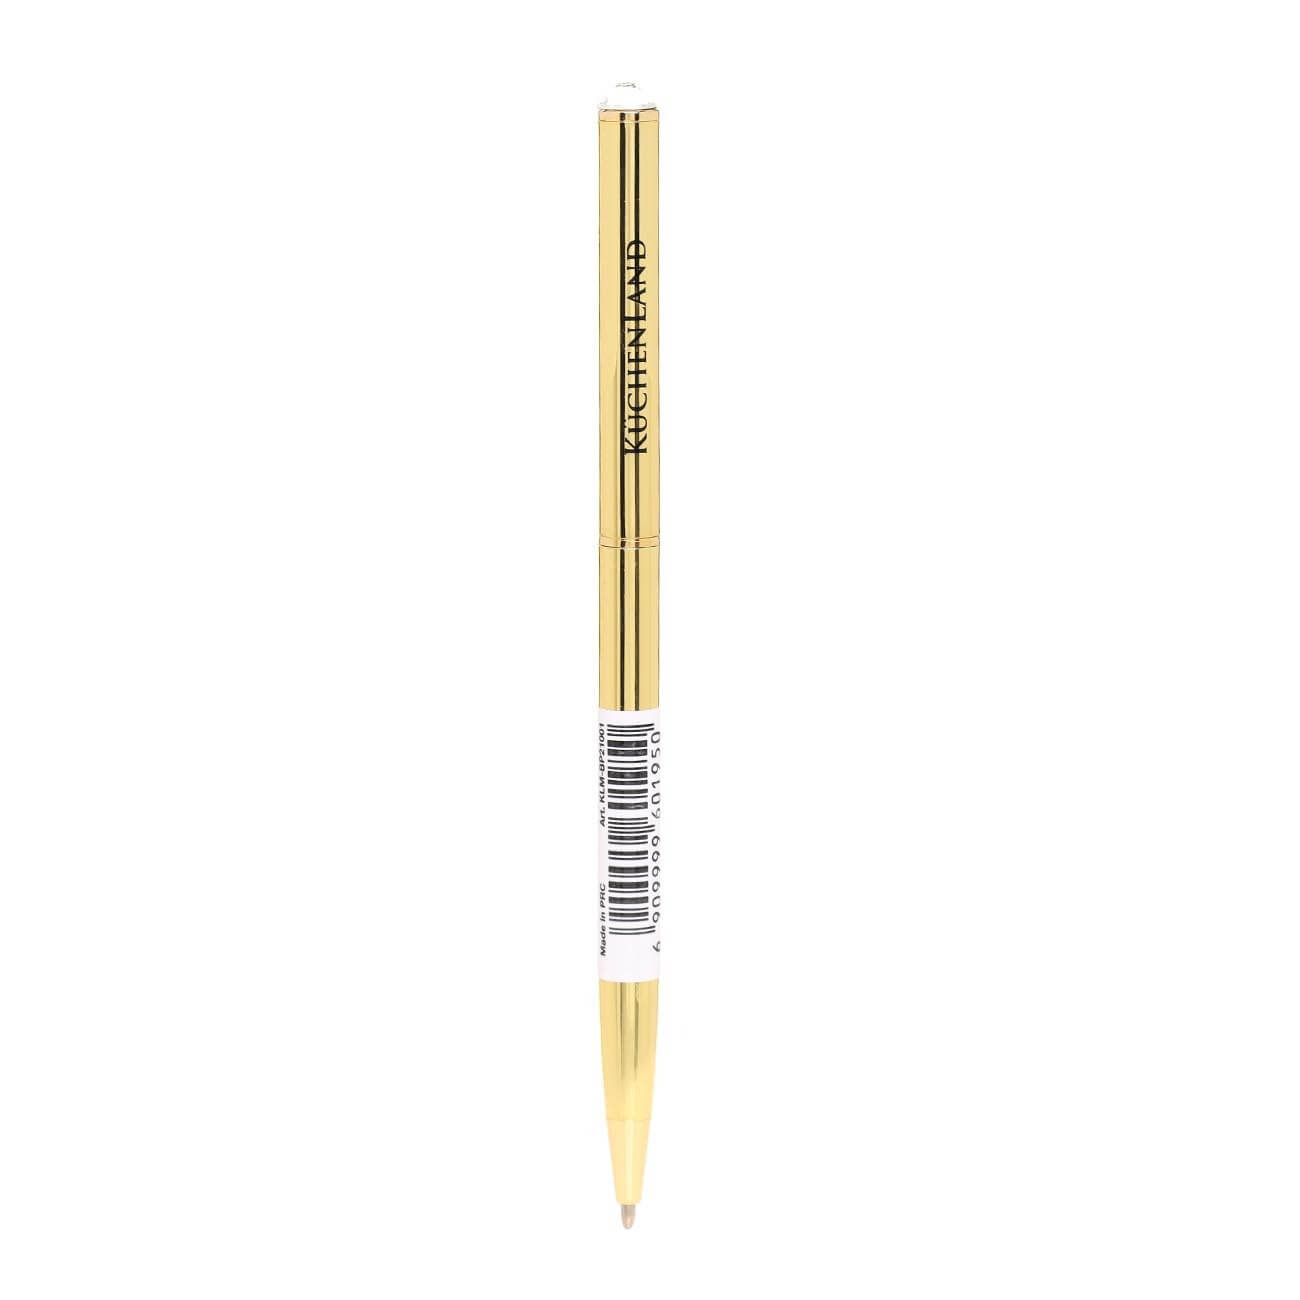 Ручка шариковая, 13 см, с кристаллом, металл, золотистая, Draw ручка закладка